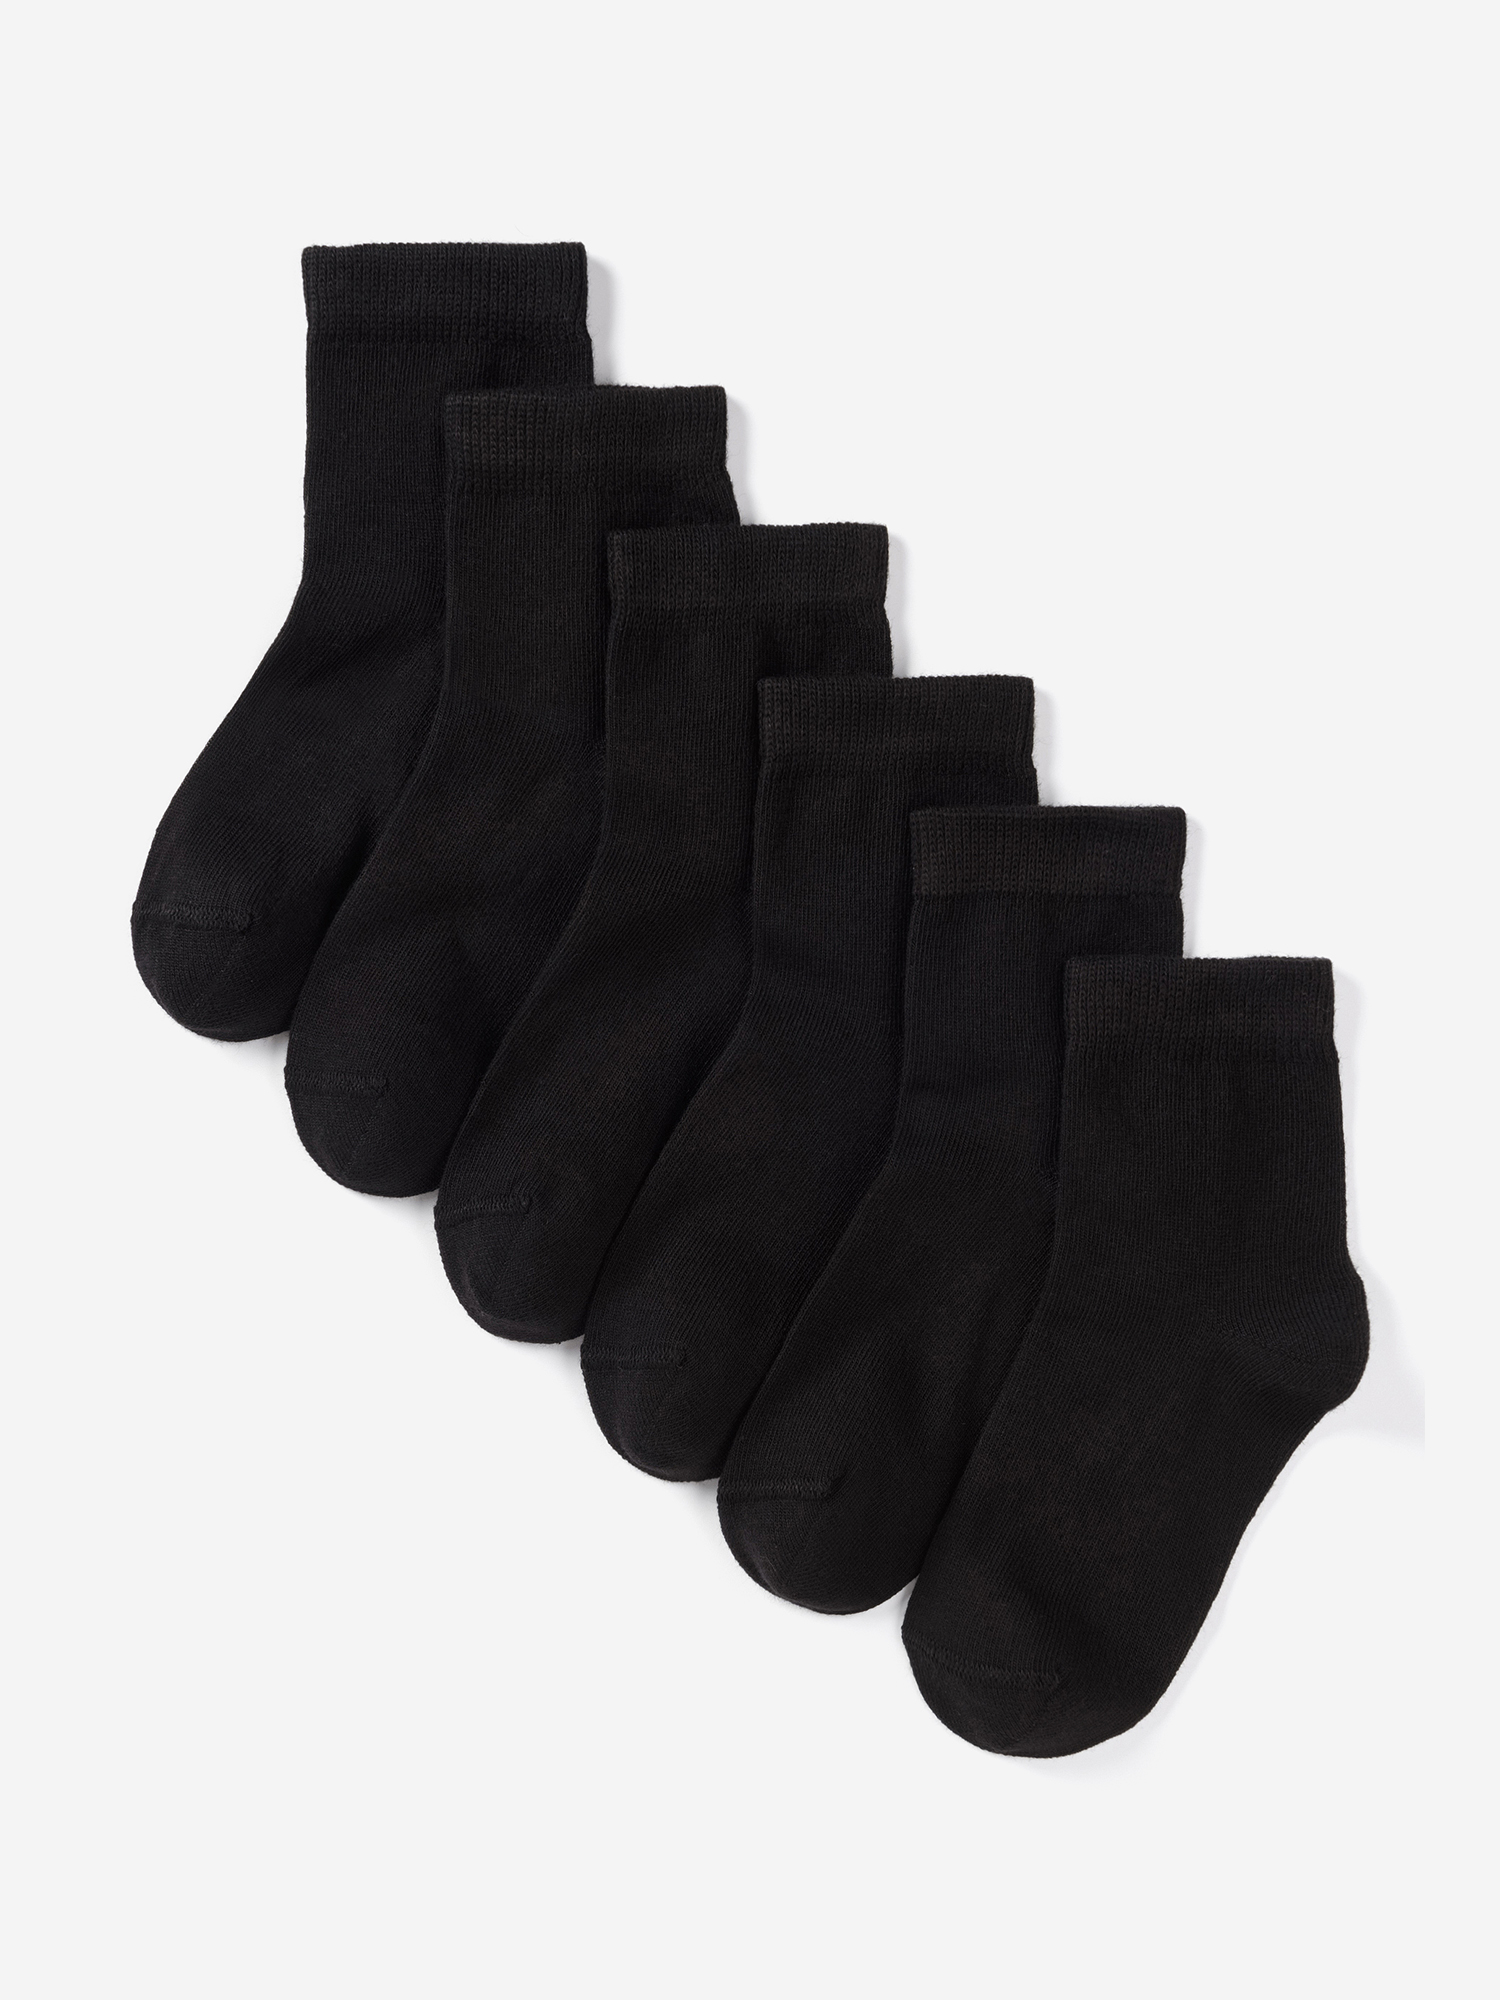 Носки для детей малышей хлопок набор 6 пары Artie, Черный